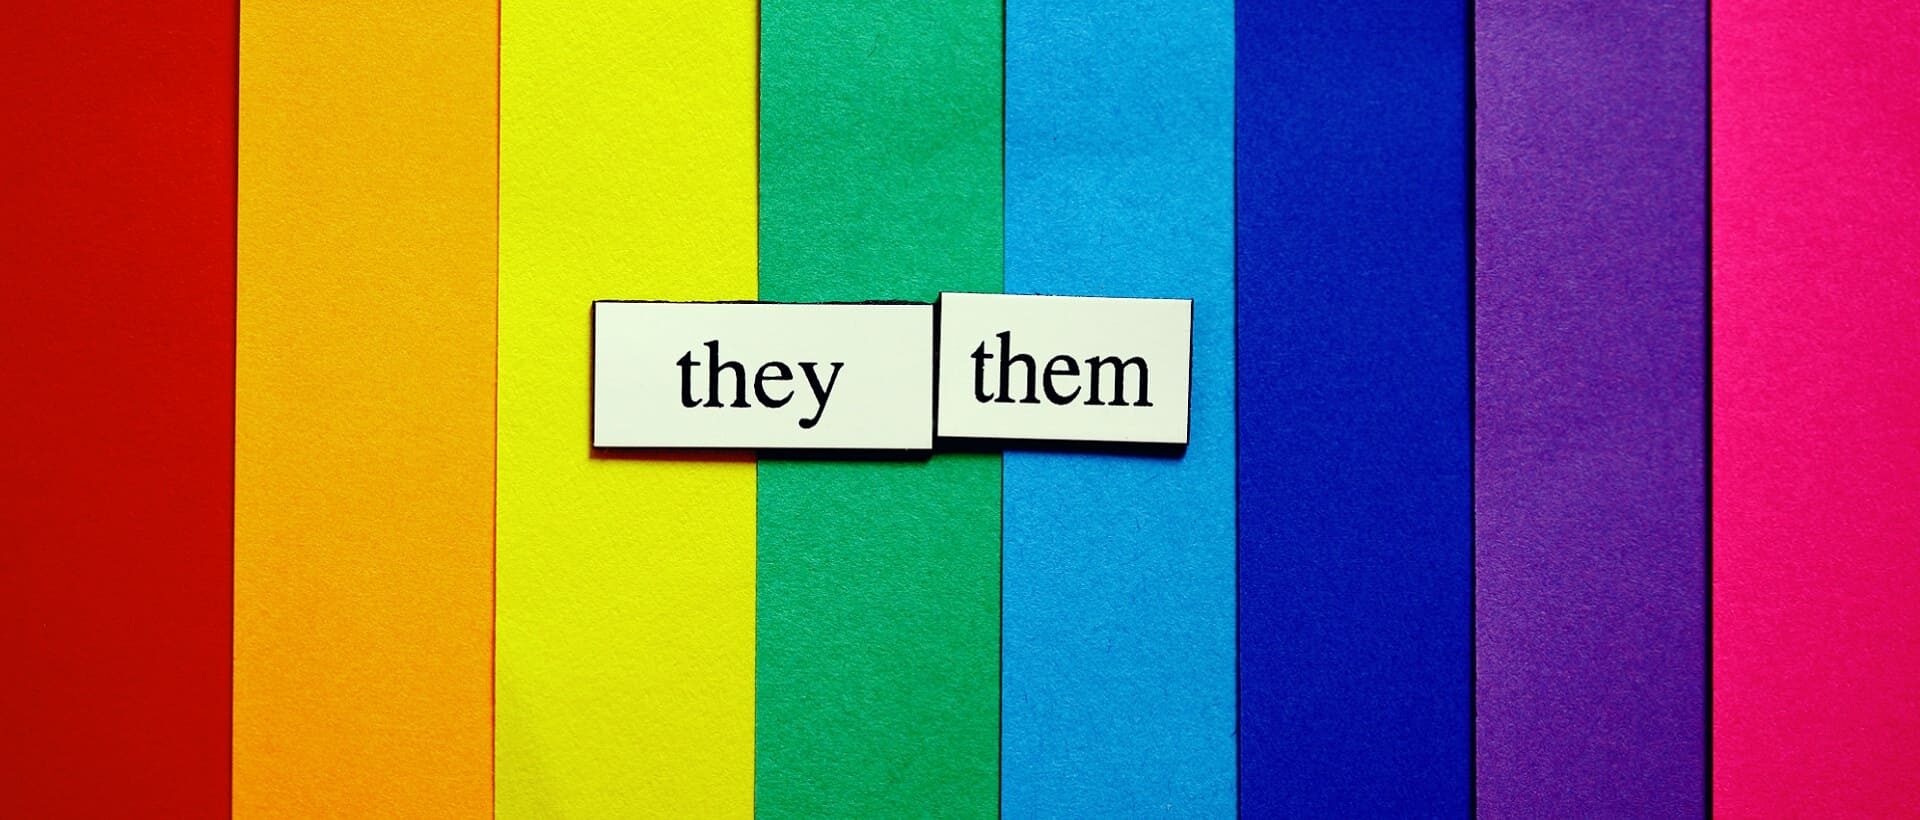 Regenbogenfarben mit geschlechtsneutralen Pronomen für gendergerechte Sprache